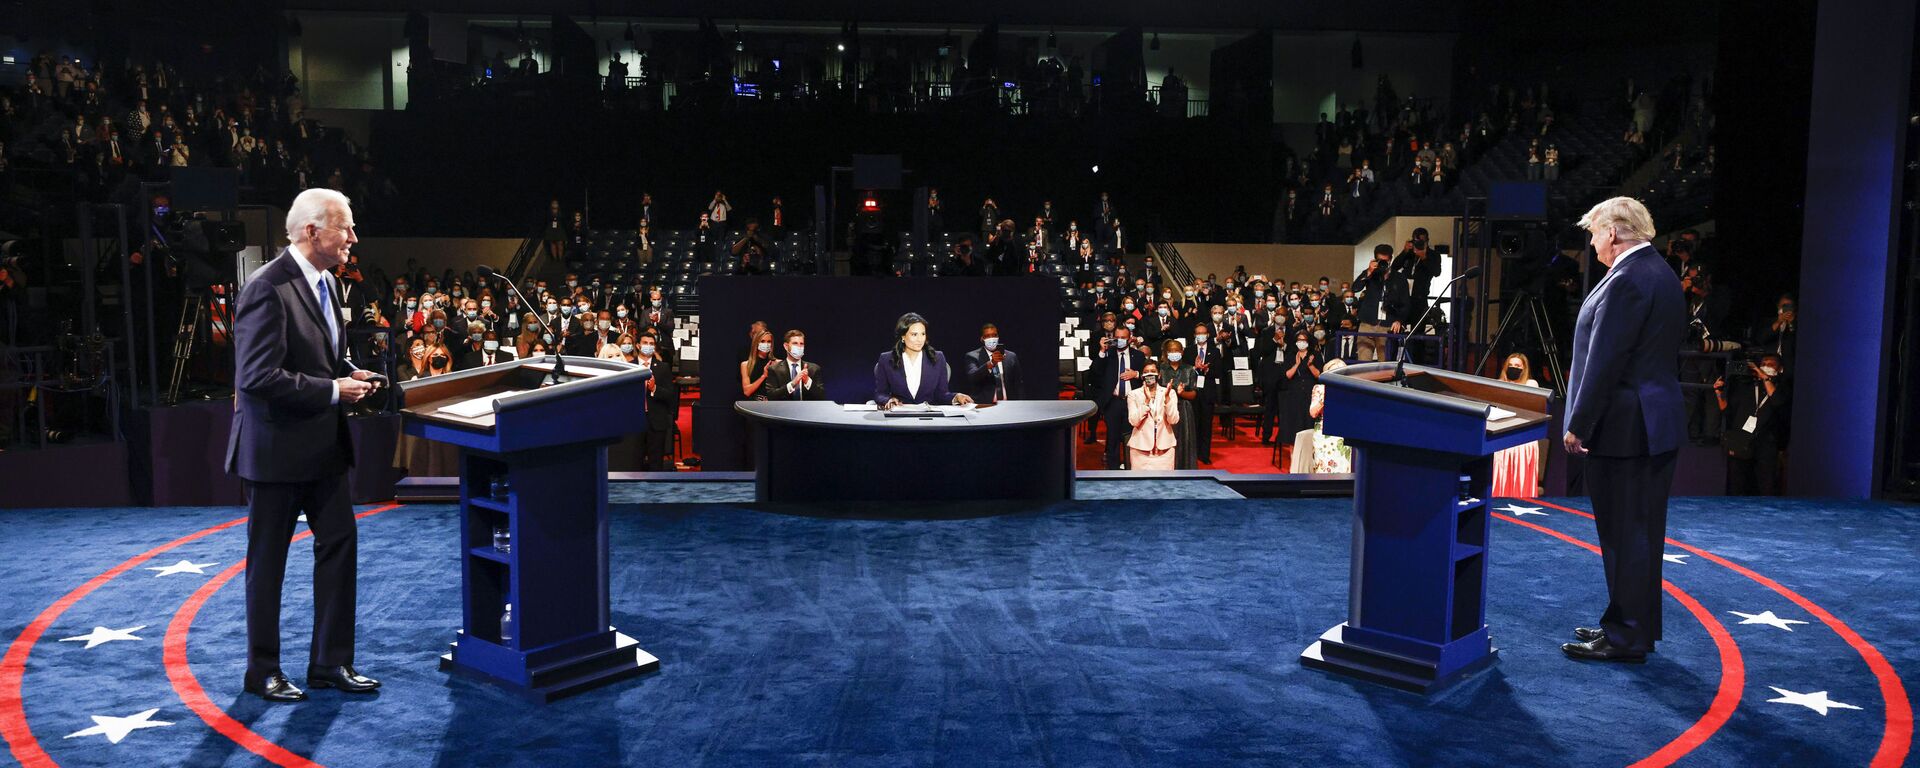 Ứng cử viên tổng thống Mỹ Joe Biden và Tổng thống Mỹ Donald Trump trong cuộc tranh luận cuối cùng. - Sputnik Việt Nam, 1920, 10.09.2021